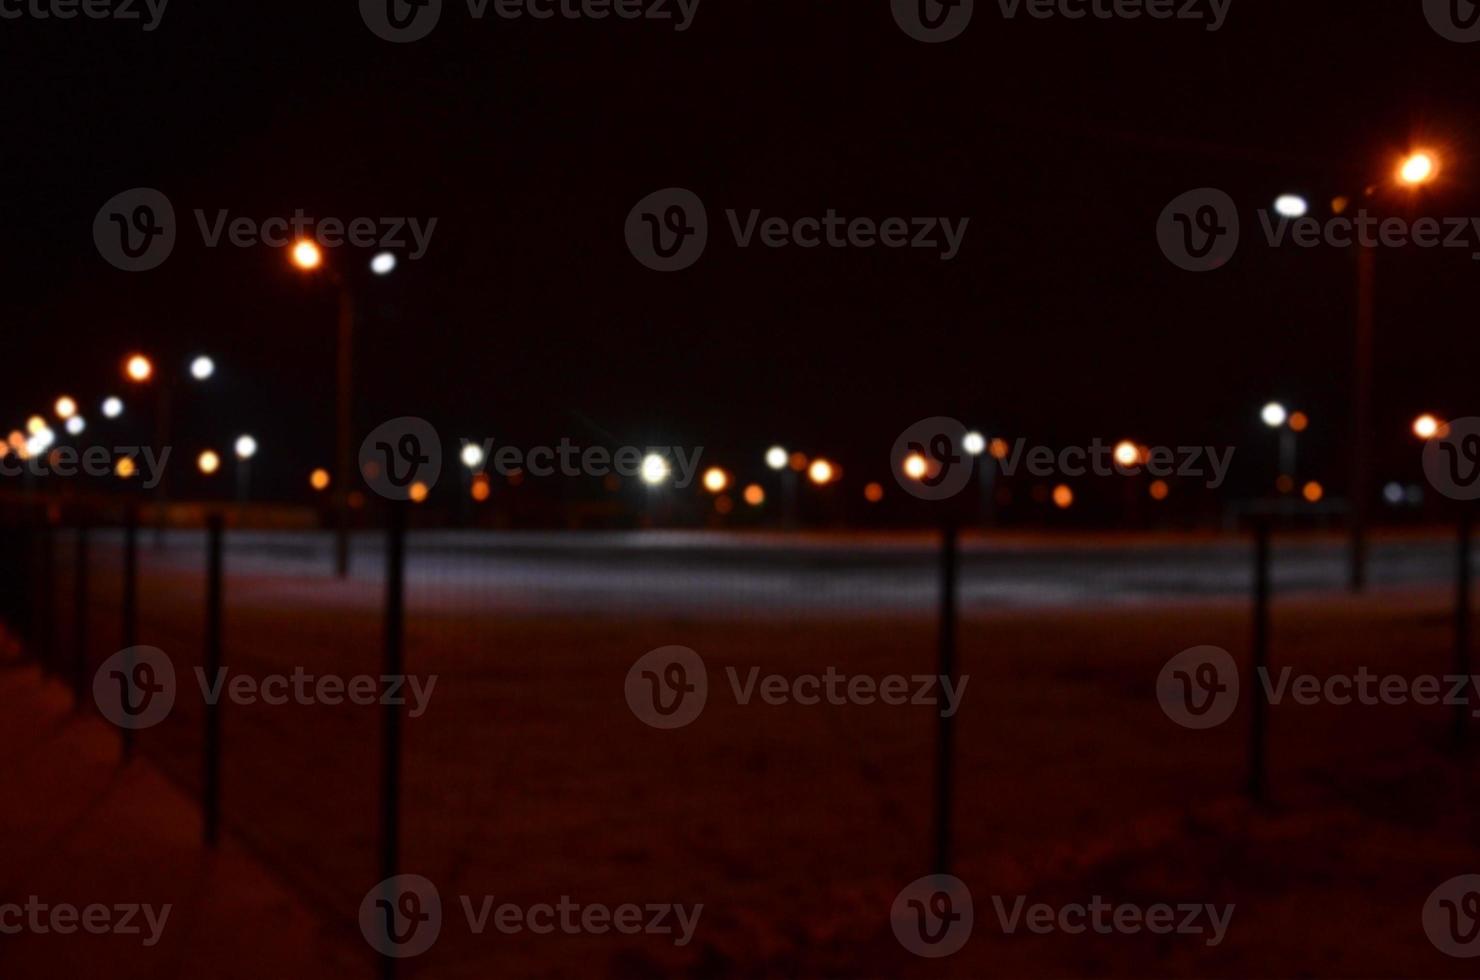 suddig Foto av skola lekplats på natt med ljus lampor